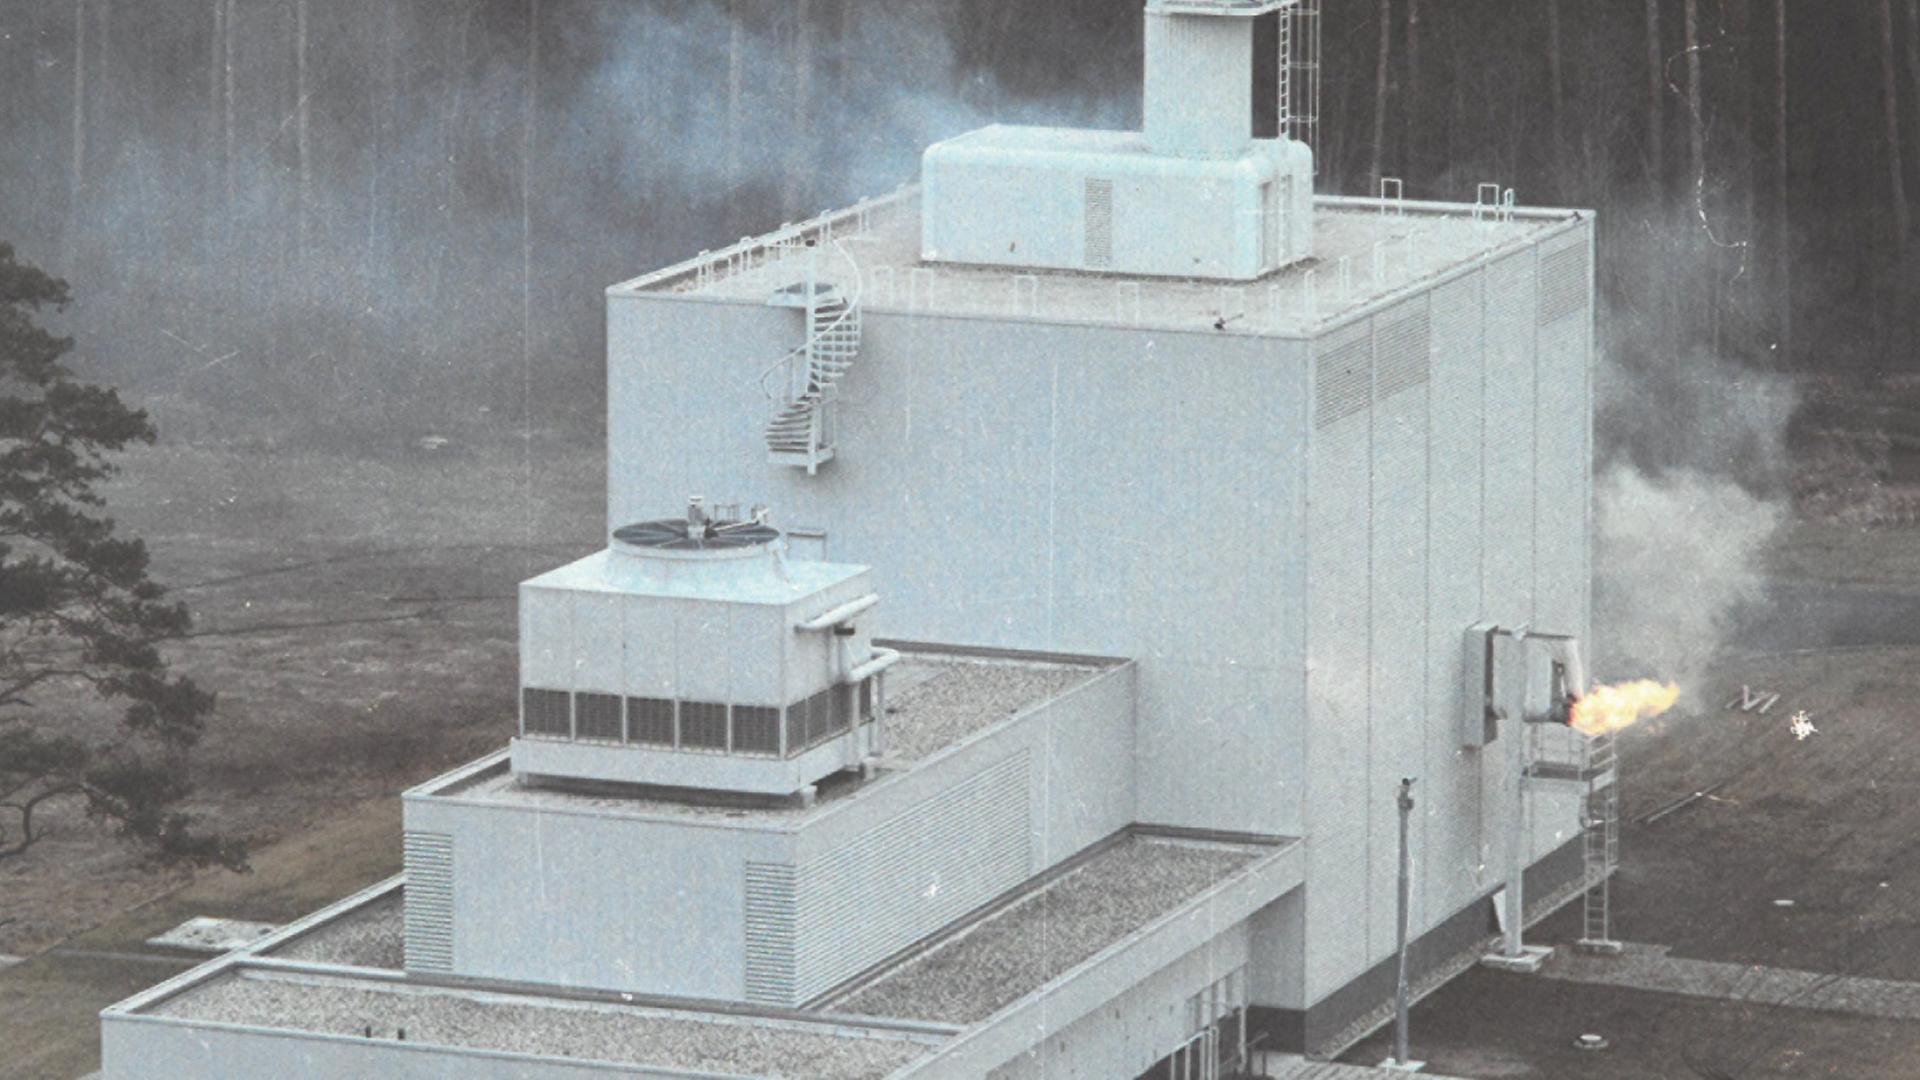 Abbildung eines Kernforschungszentrums, aus dessen Seite Feuer austritt.